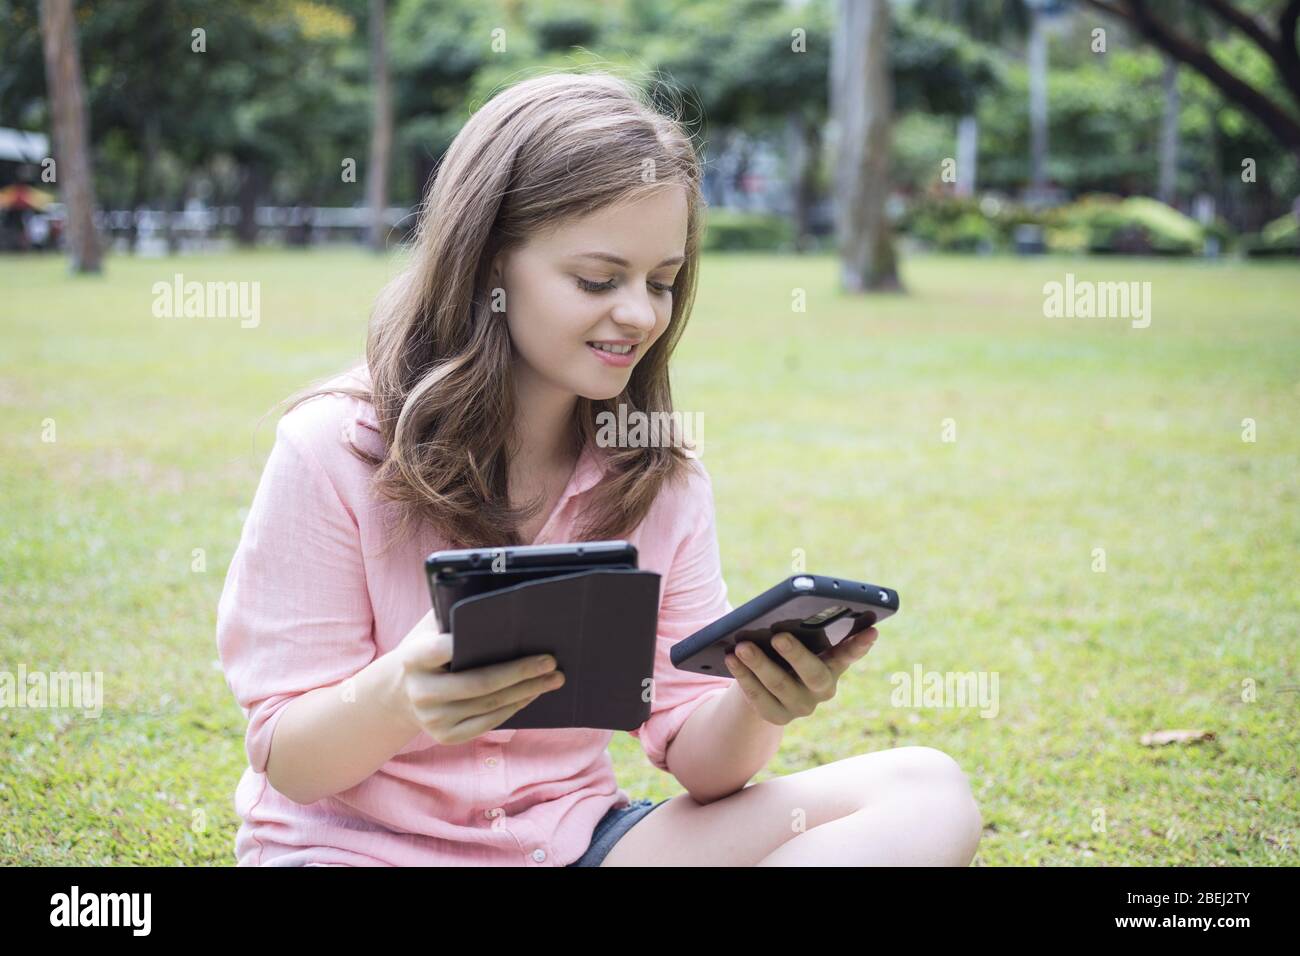 Junge kaukasische Frau mit einem Smartphone in der einen Hand und einem Tablet in der anderen, die lächelnd auf dem Boden sitzt. Außenportrait. Stockfoto